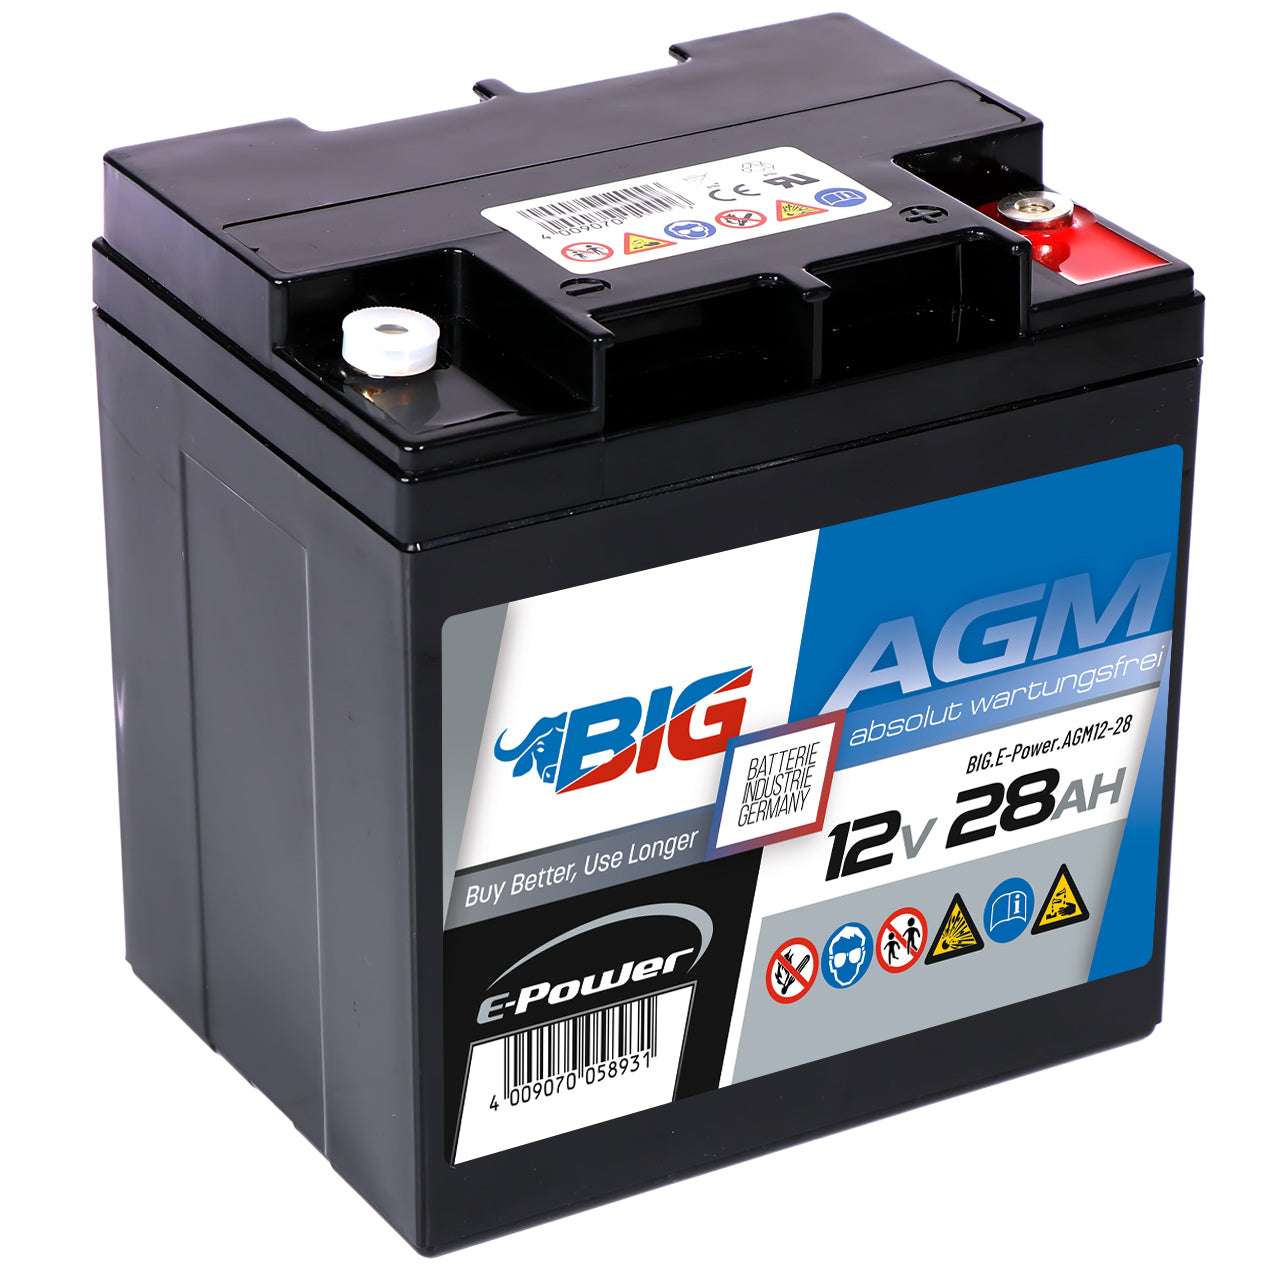 BIG E-Power AGM 12V 28Ah